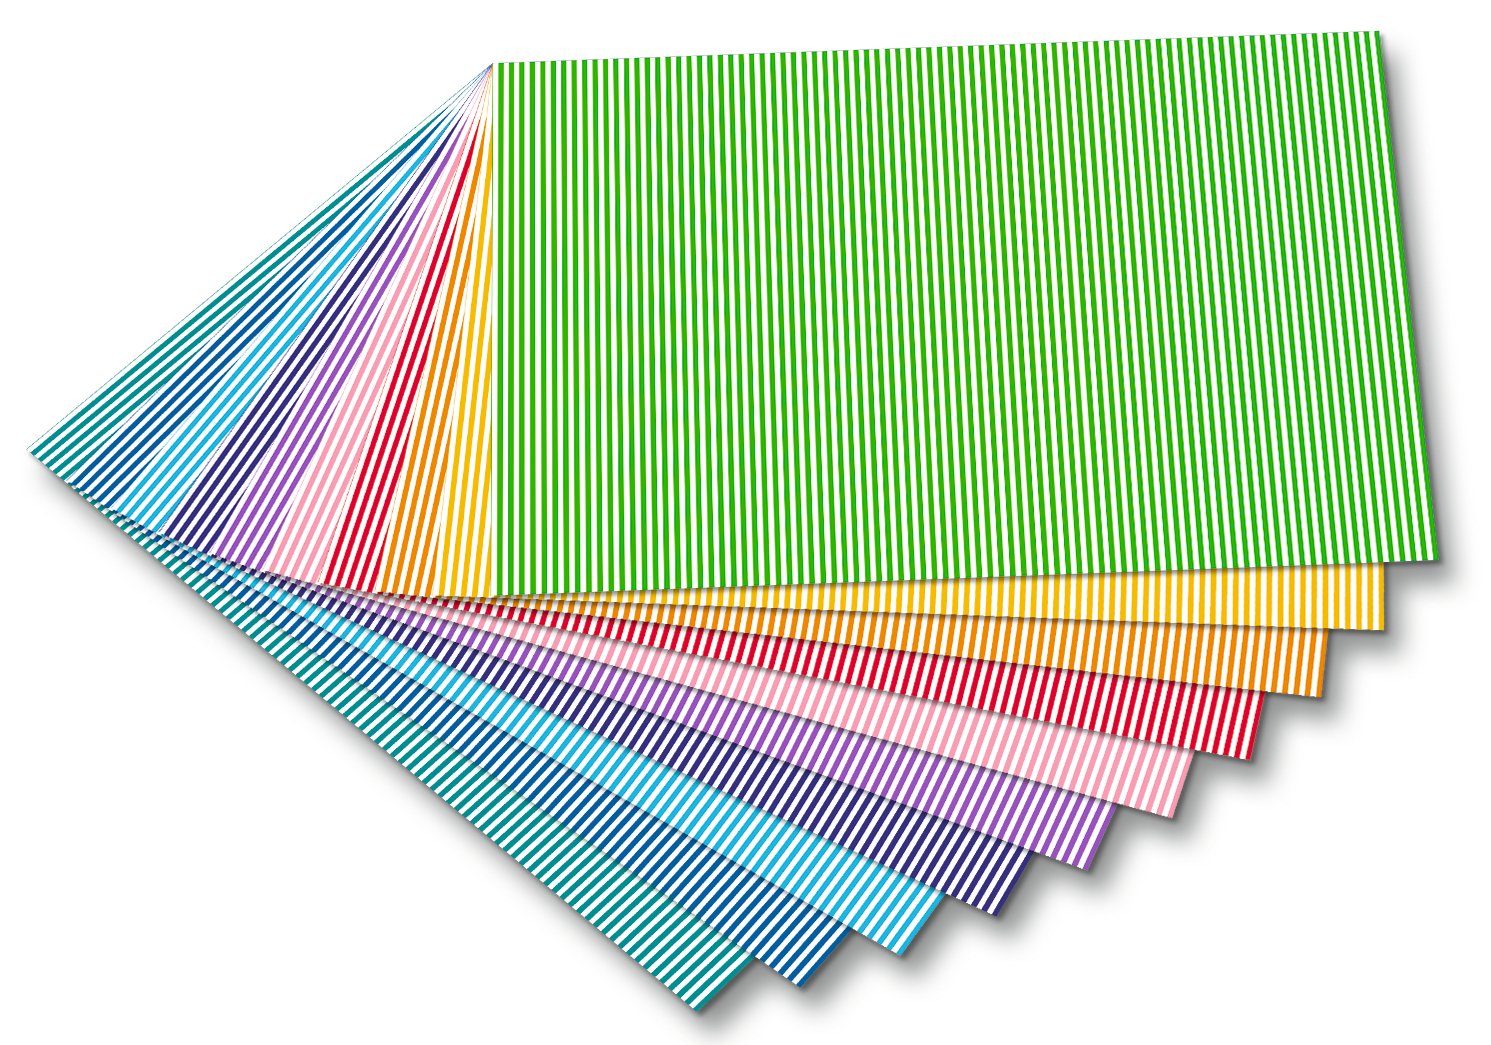 Folia Motivpapier Motivkarton Streifen, klein, 10 Bogen, 50x70cm, 300g/qm